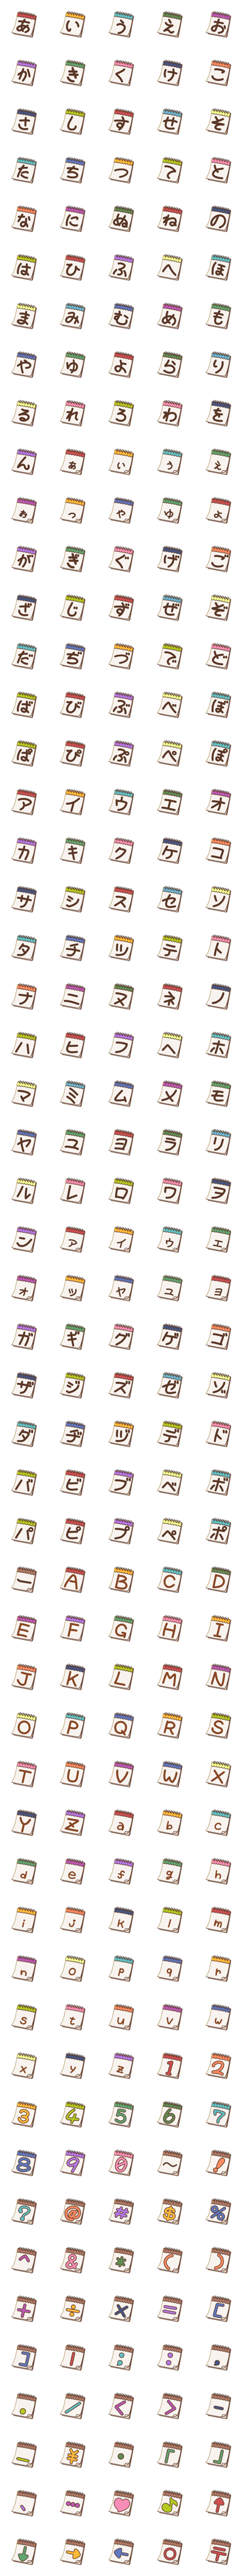 日めくりカレンダー風デコ文字-詳細画像